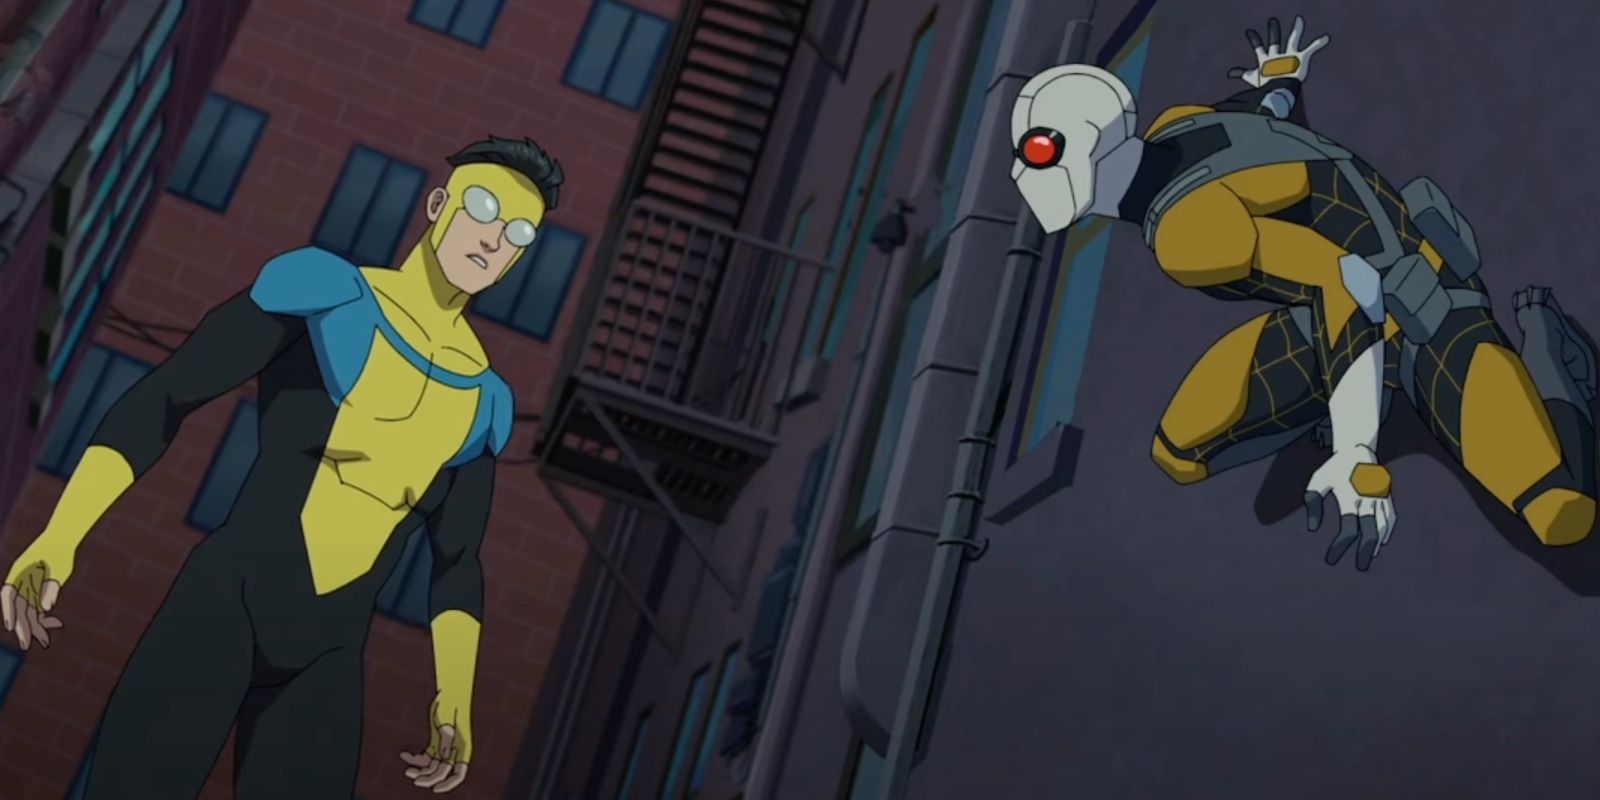 Вирусный фанатский монтаж Invincible воссоздает сцену с агентом Пауком и Человеком-пауком